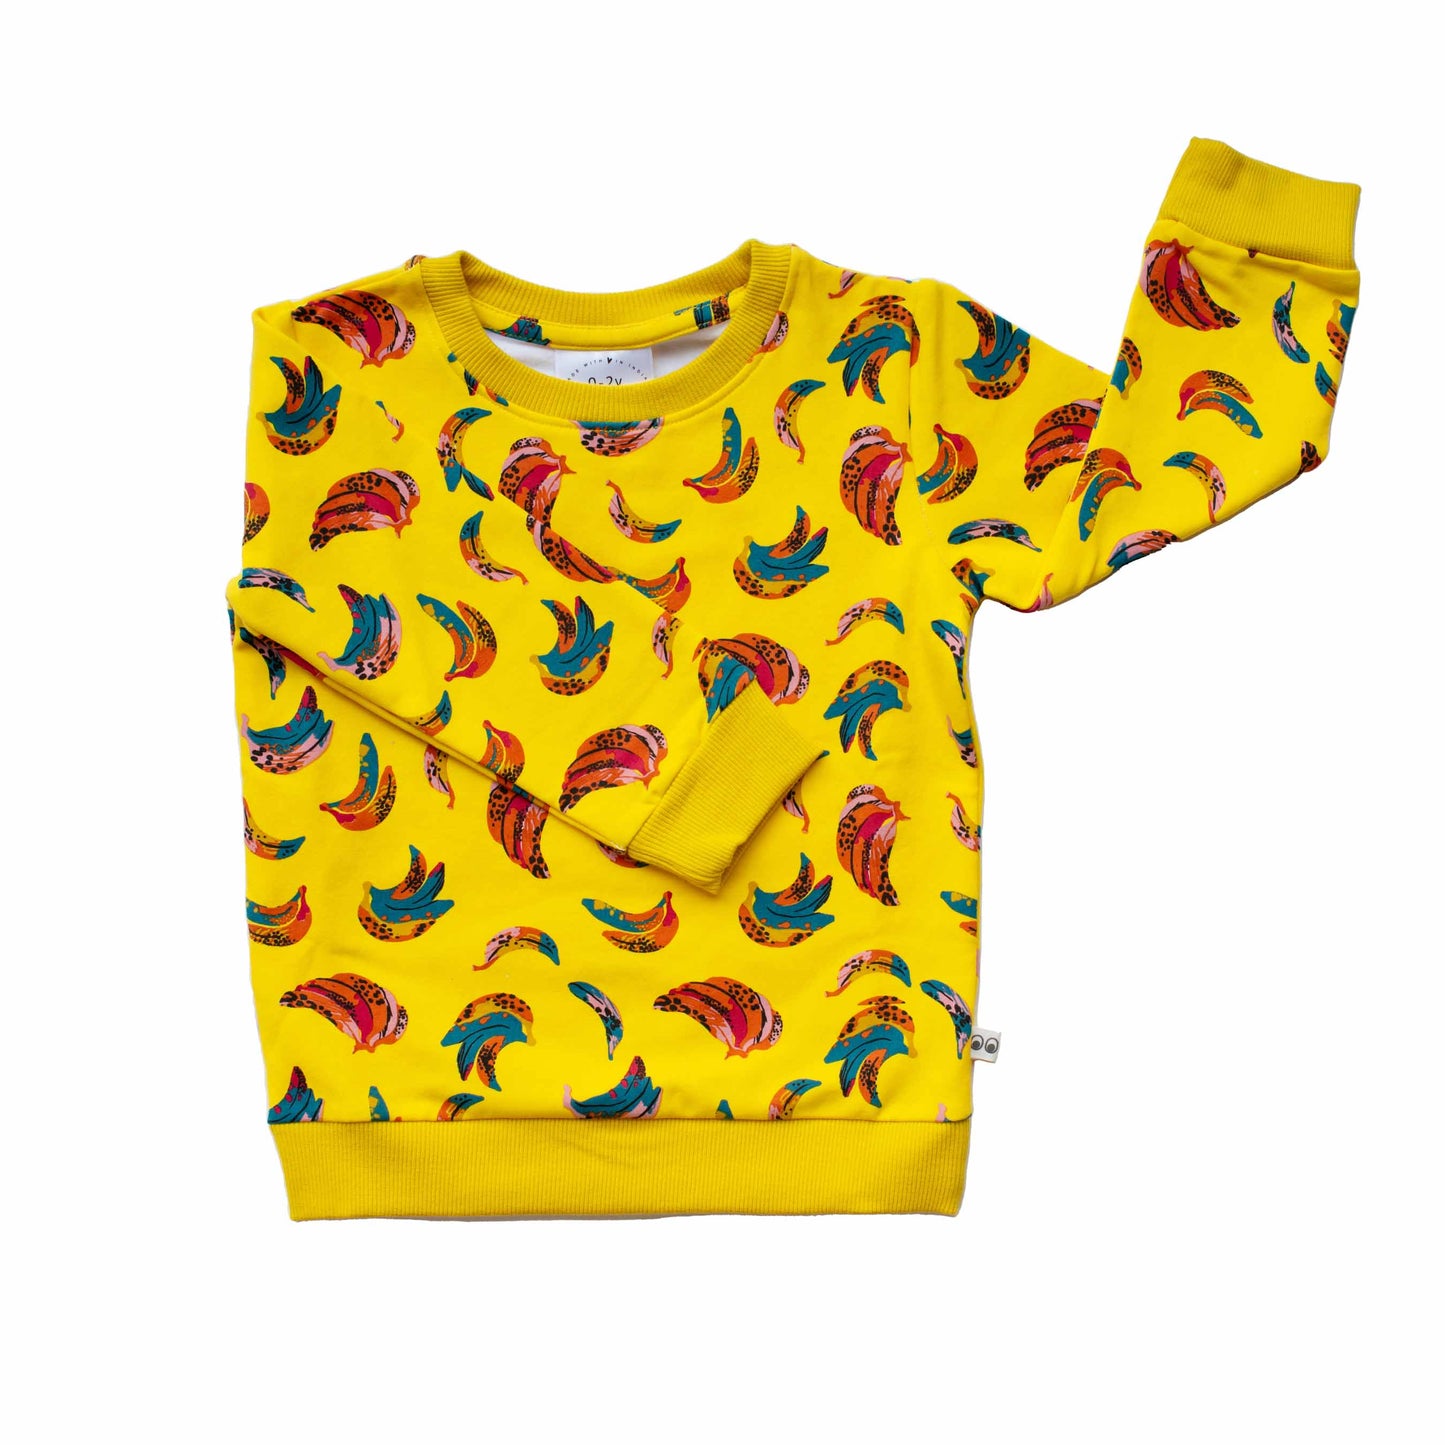 Going Bananas Cotton Fleece Lined Unisex Sweatshirt